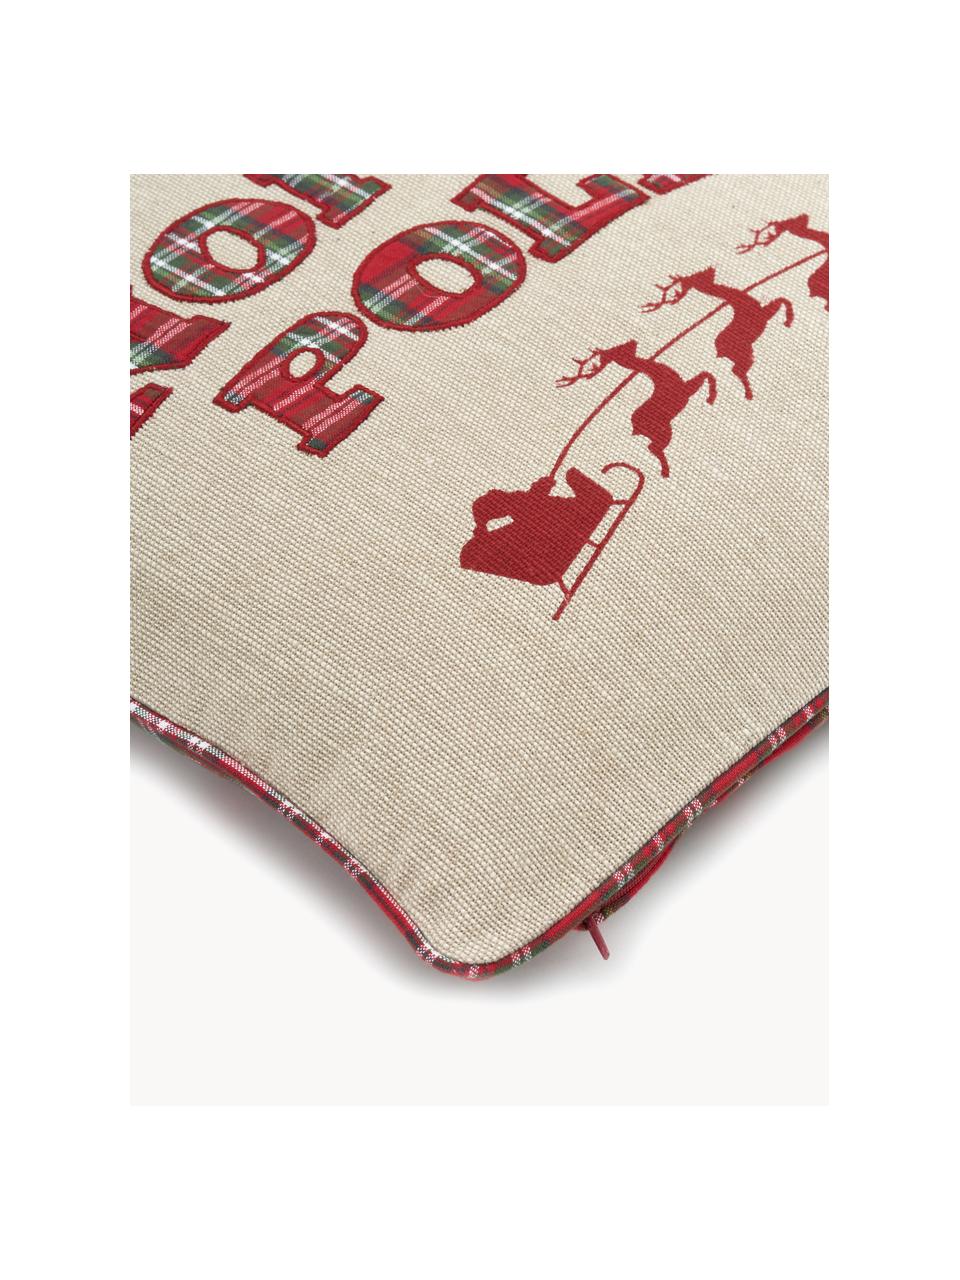 Geborduurde dubbelzijdige kussenhoes North Pole met borduurwerk, 100% katoen, Beige, rood, B 45 x L 45 cm